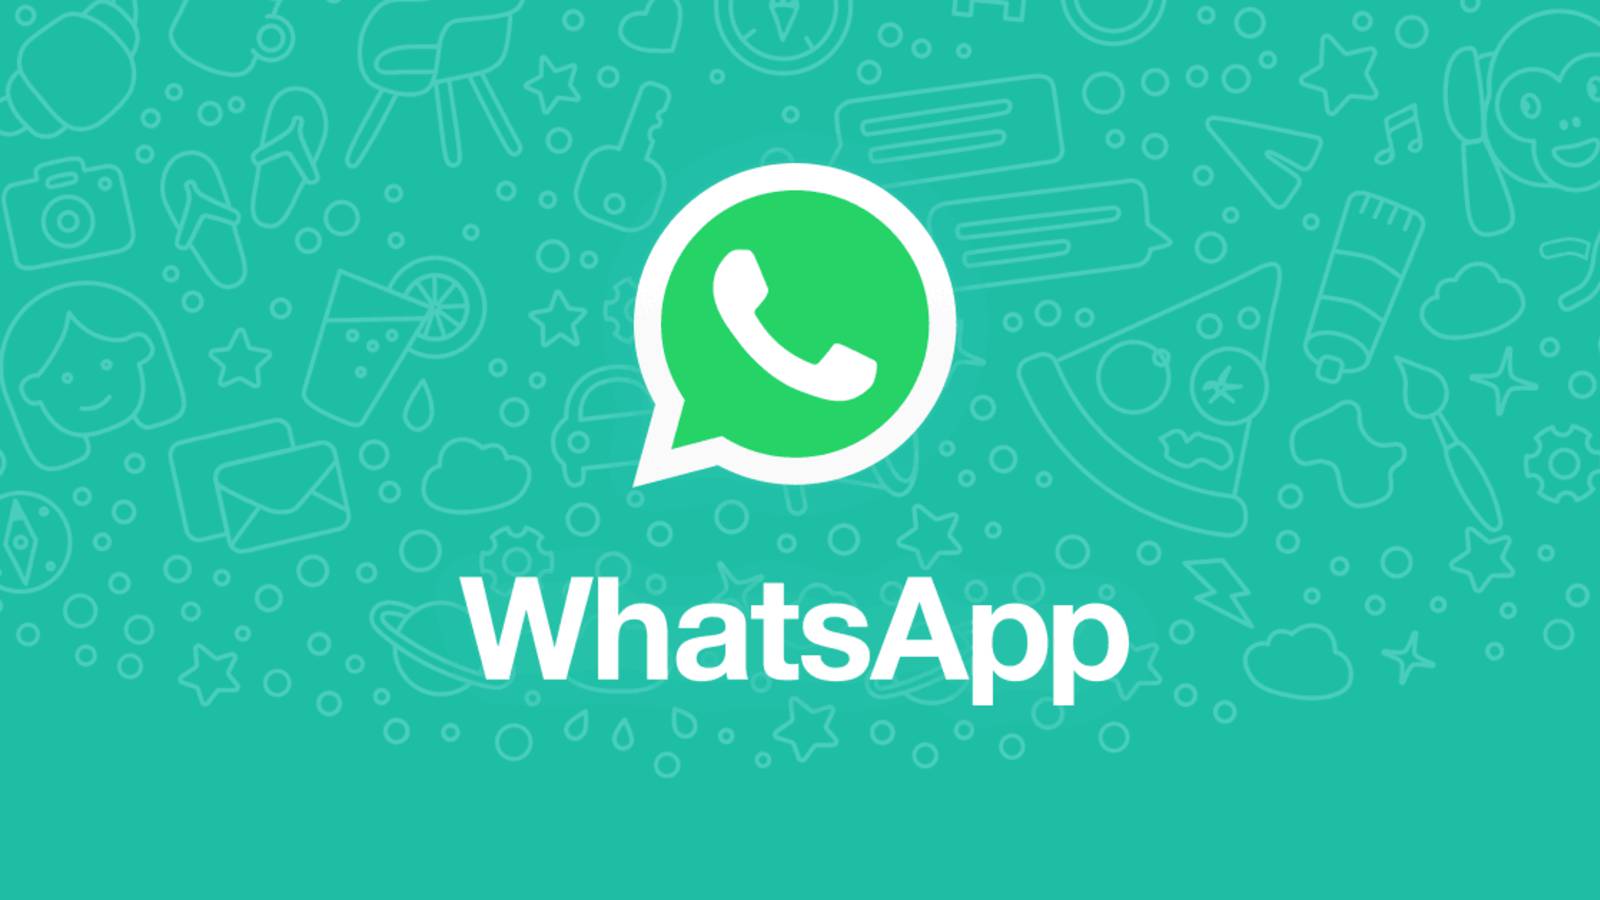 WhatsApp-Werbung